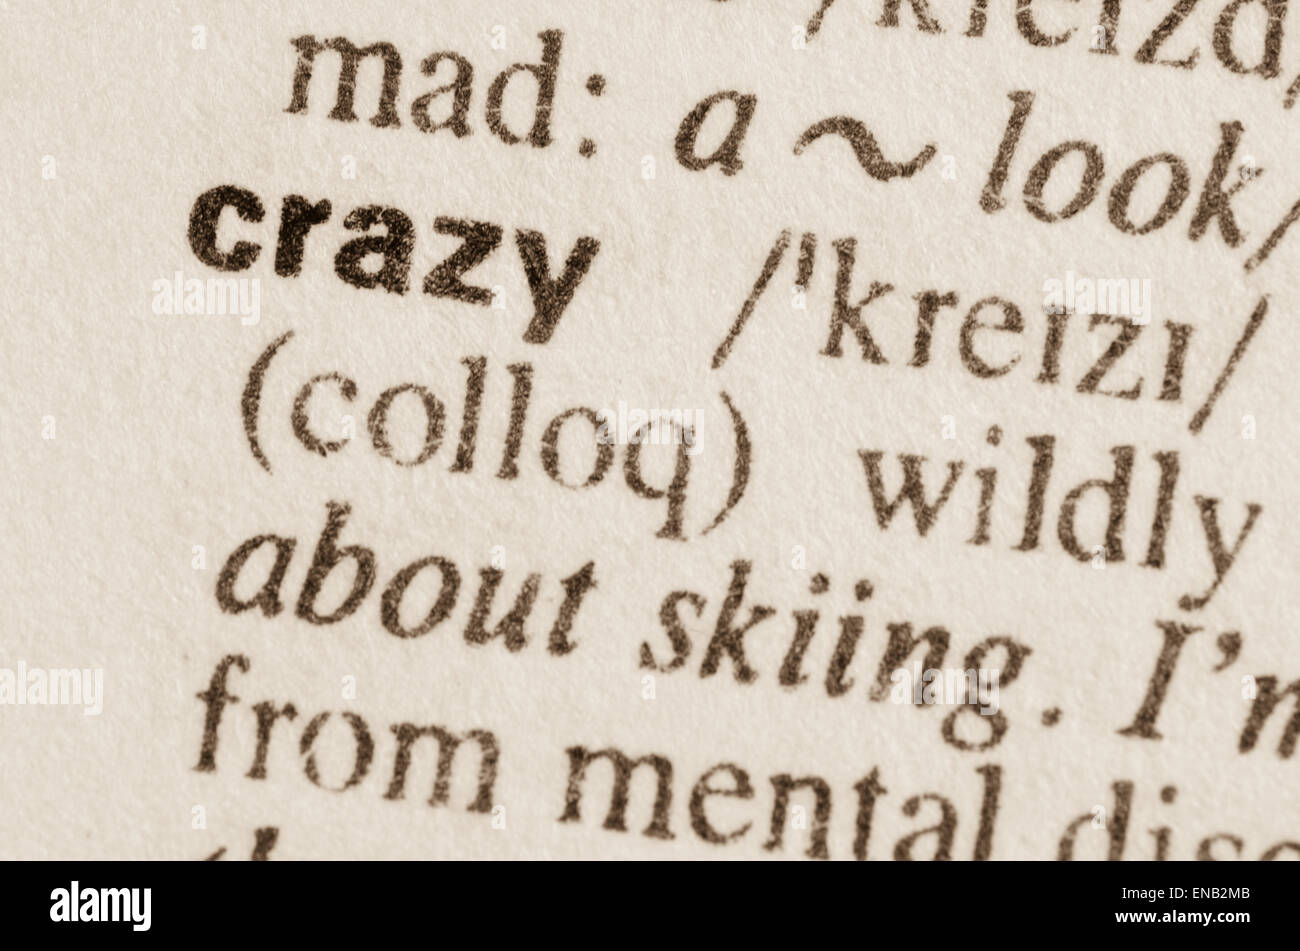 Definizione della parola crazy nel dizionario Foto Stock